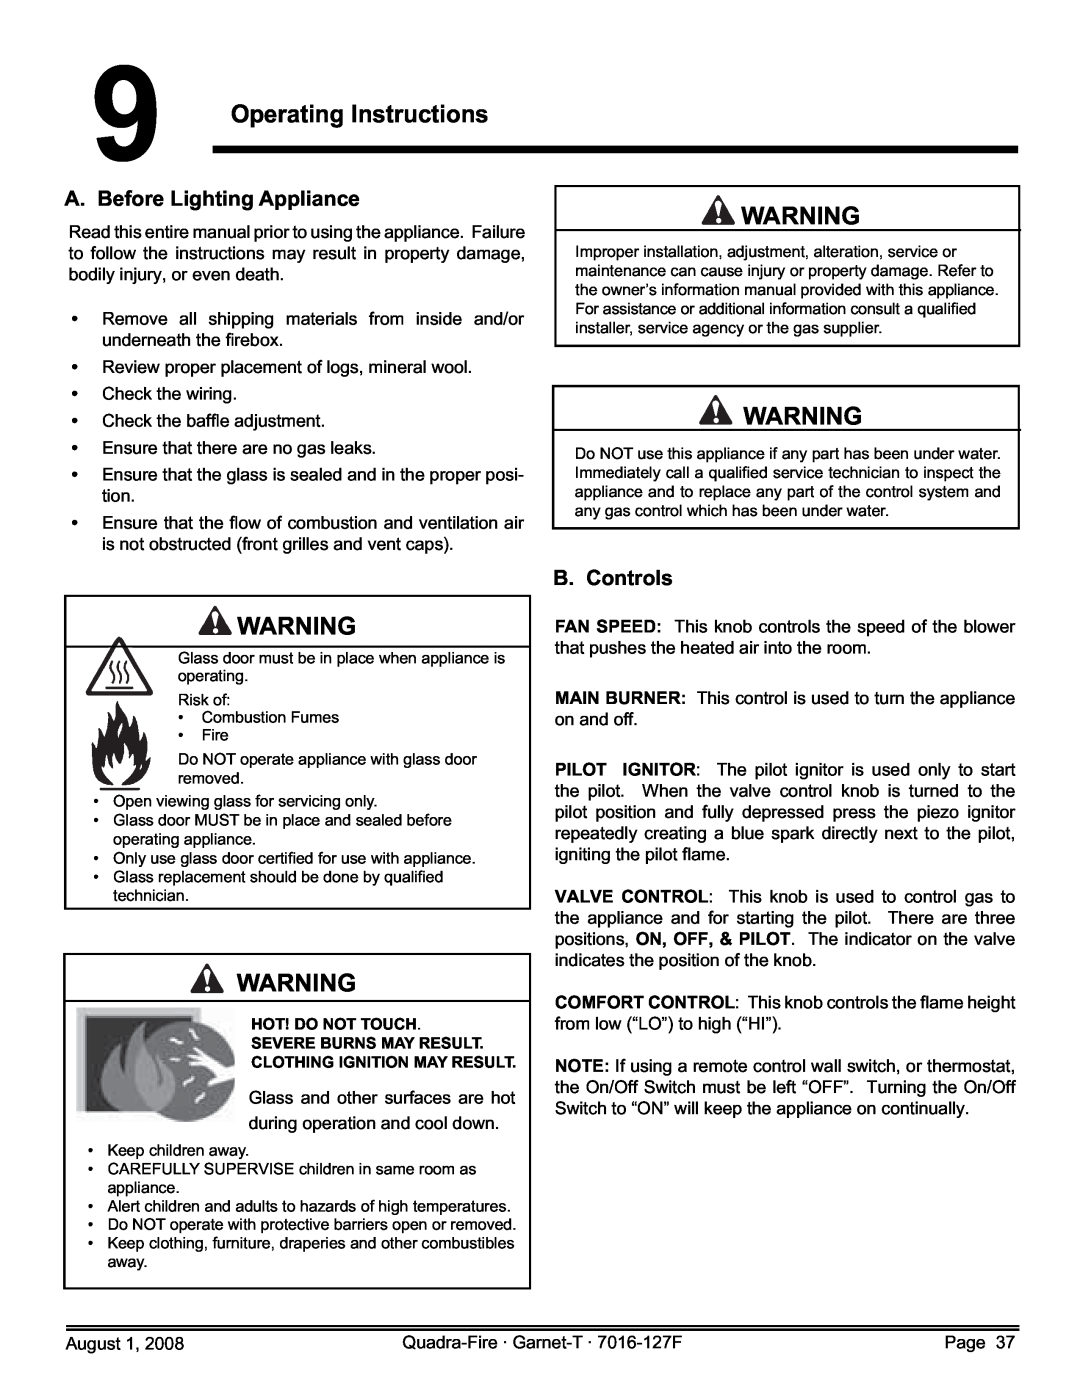 Quadra-Fire GARNET-D-MBK, GARNET-MBK, GARNET-D-PMH 9Operating Instructions, A. Before Lighting Appliance, B. Controls 